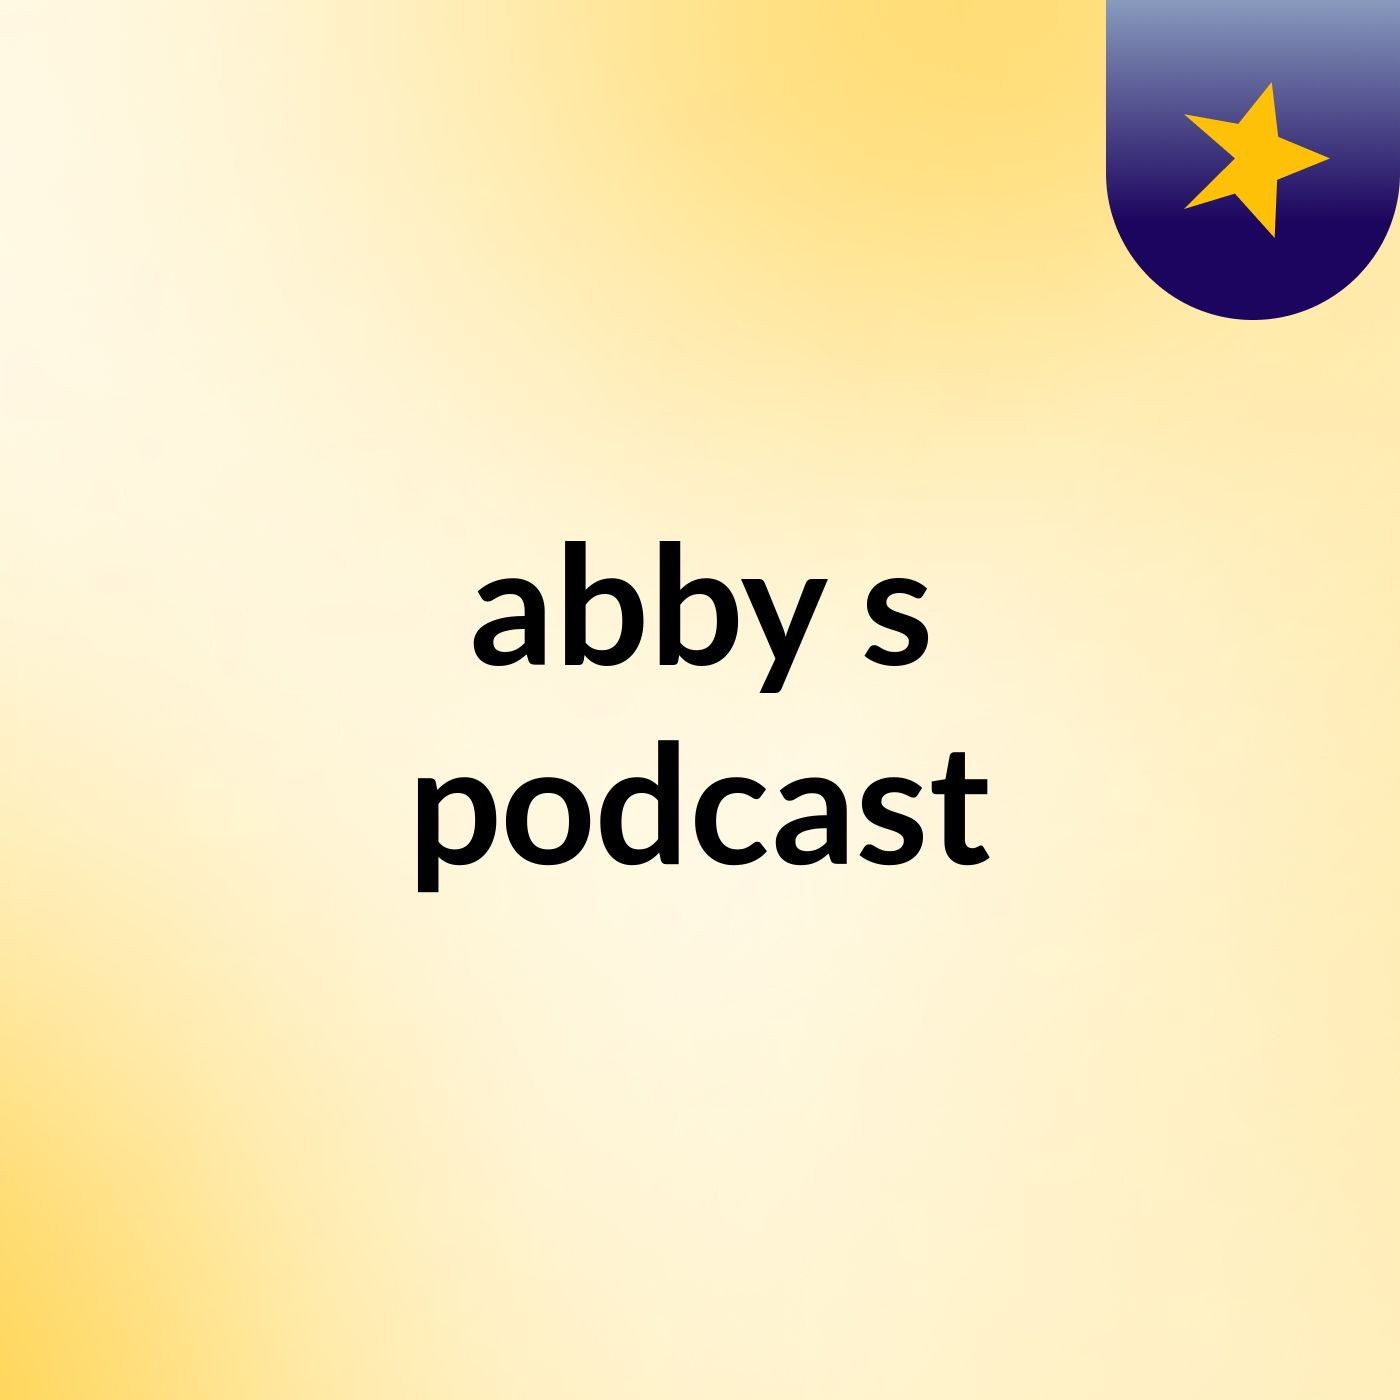 abby's podcast